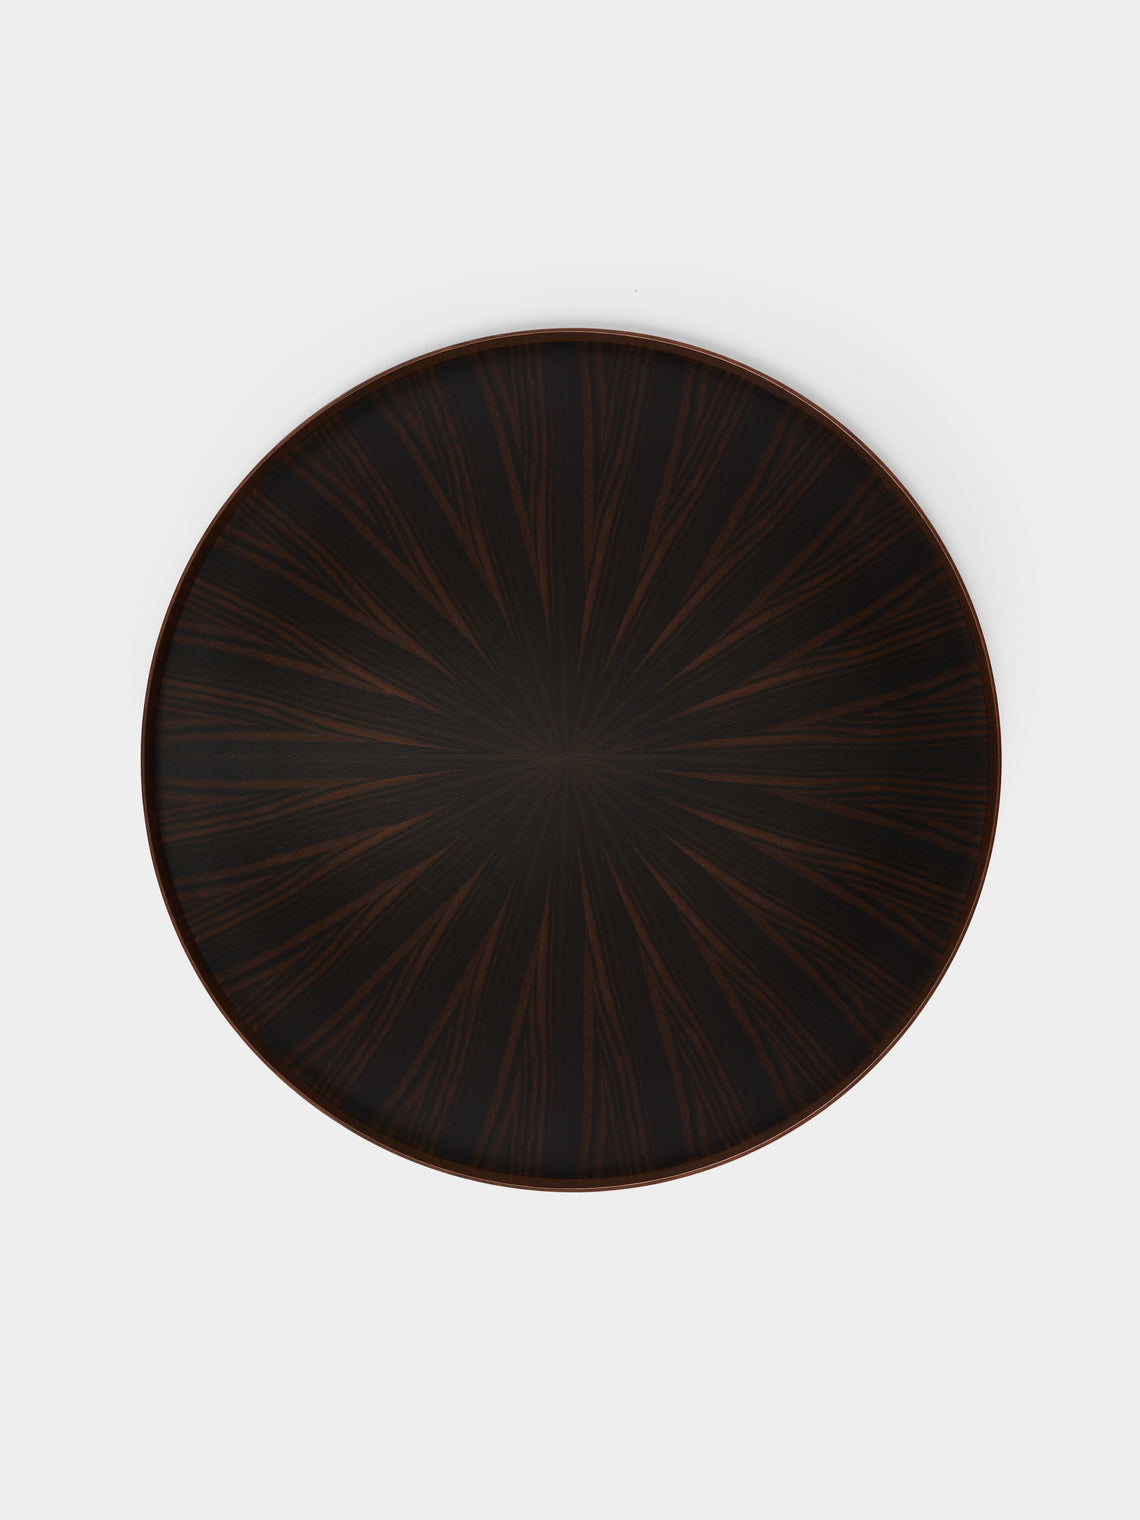 Mori Kougei - Ebony Round Wood Tray -  - ABASK - 